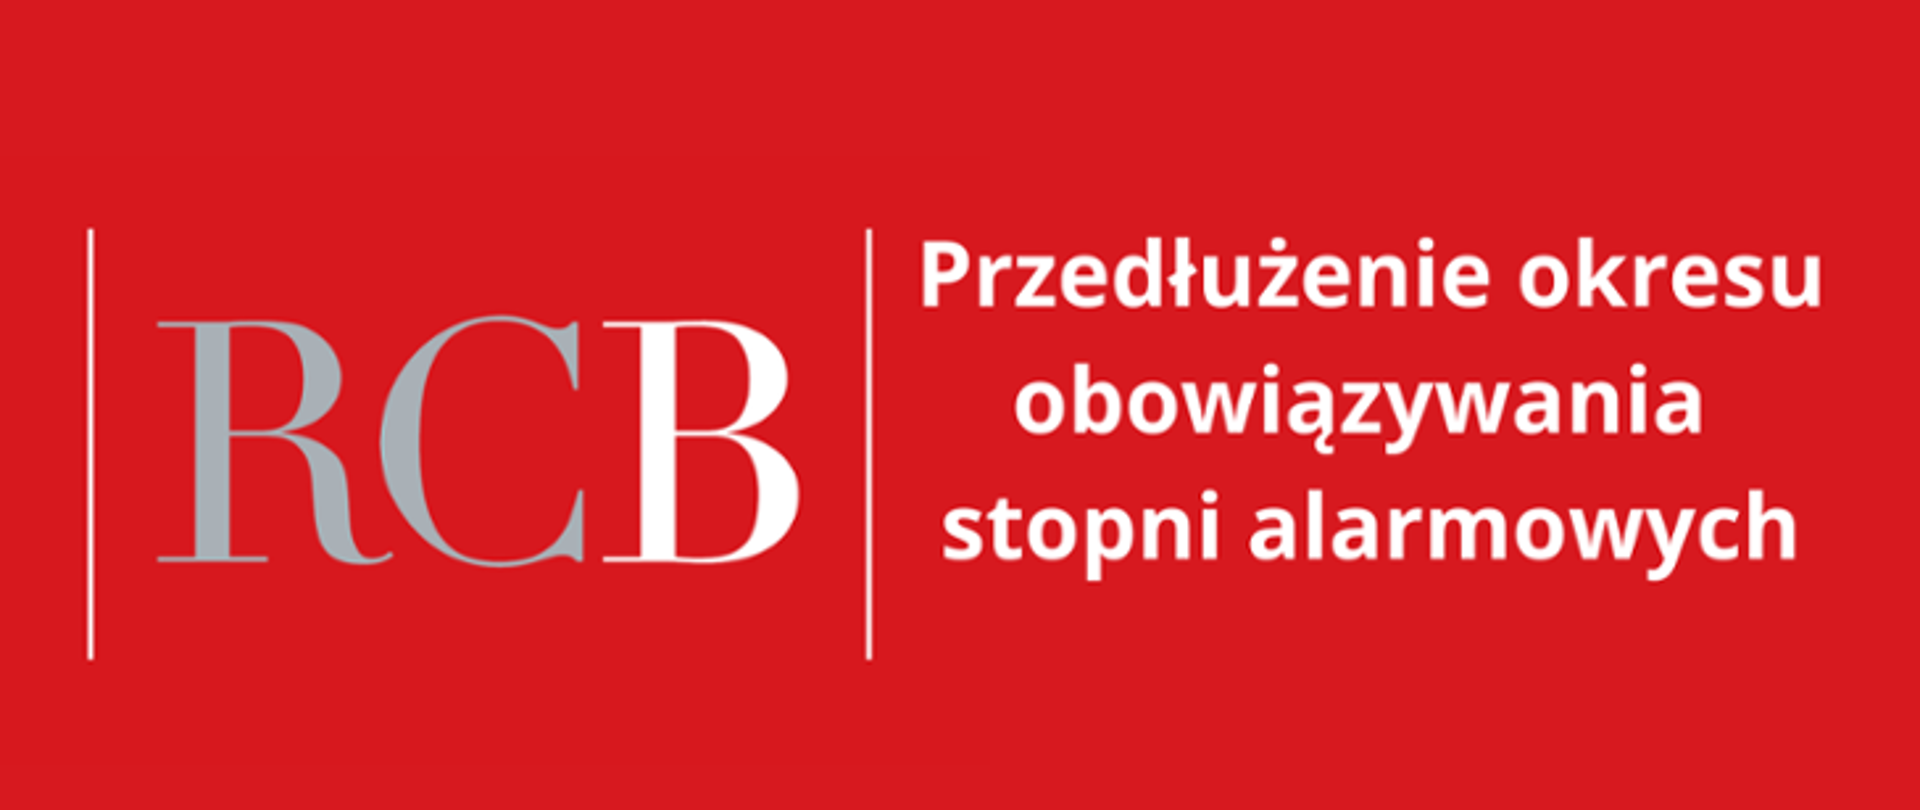 Prezes Rady Ministrów Donald Tusk podpisał zarządzenia wprowadzające stopnie alarmowe: 2. stopnia BRAVO i 2. stopnia BRAVO-CRP na terenie całego kraju oraz 2. stopnia BRAVO wobec polskiej infrastruktury energetycznej, mieszczącej się poza granicami Rzeczypospolitej Polskiej.